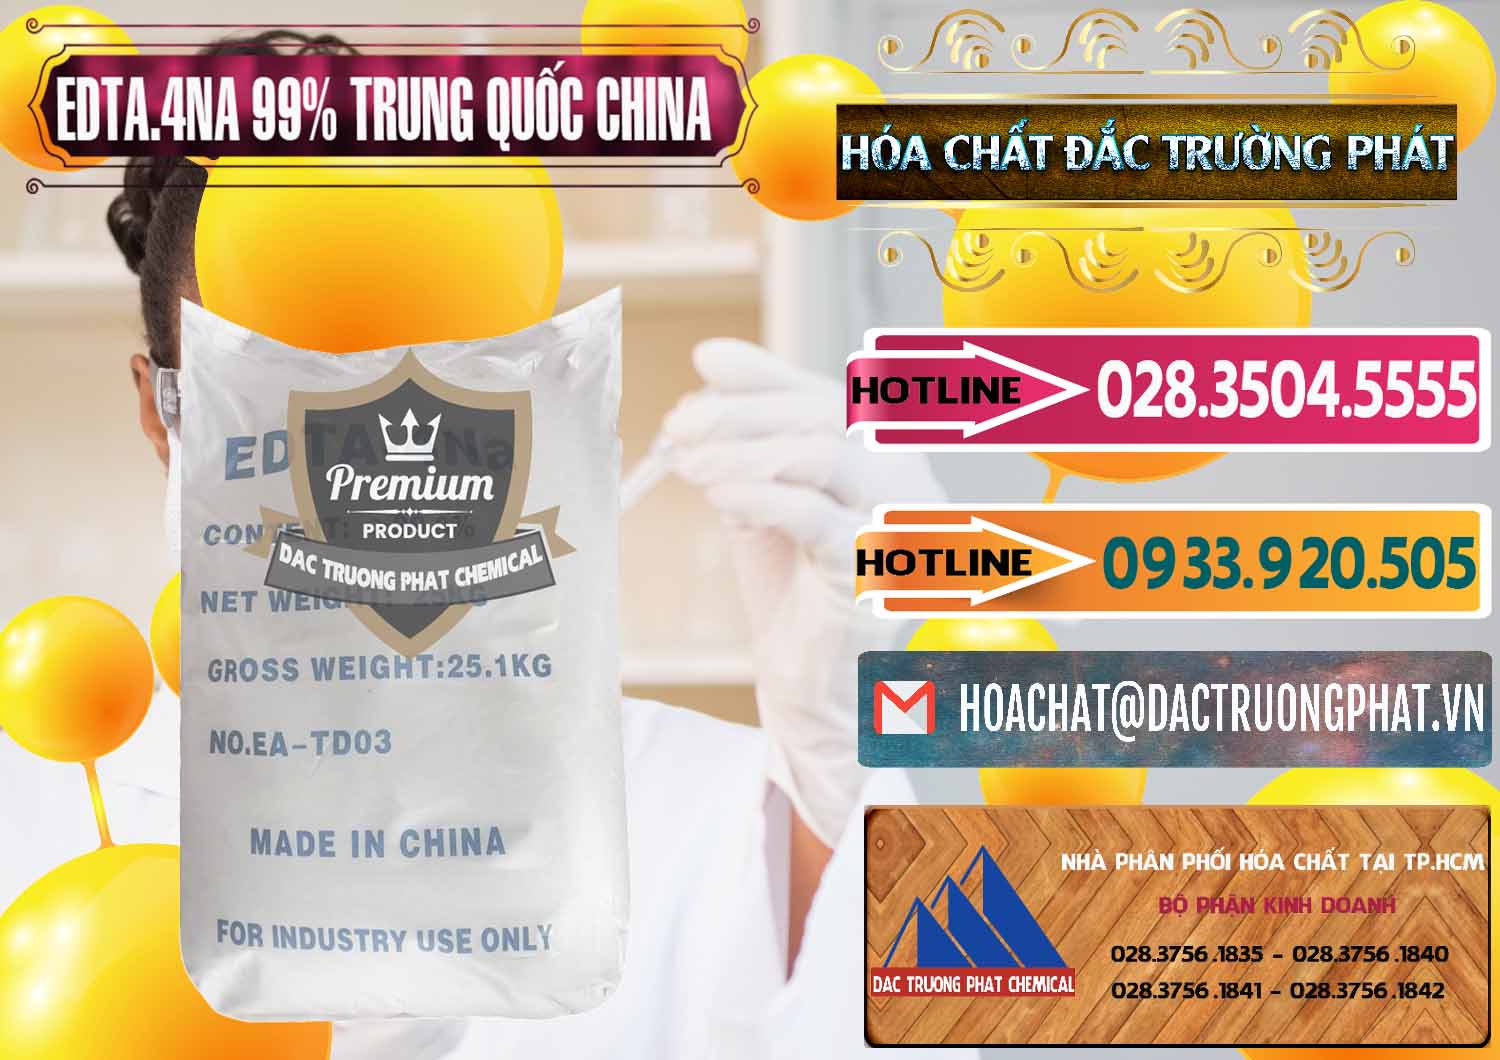 Chuyên cung cấp và bán EDTA.4NA - EDTA Muối 99% Trung Quốc China - 0292 - Cty chuyên cung ứng & phân phối hóa chất tại TP.HCM - dactruongphat.vn